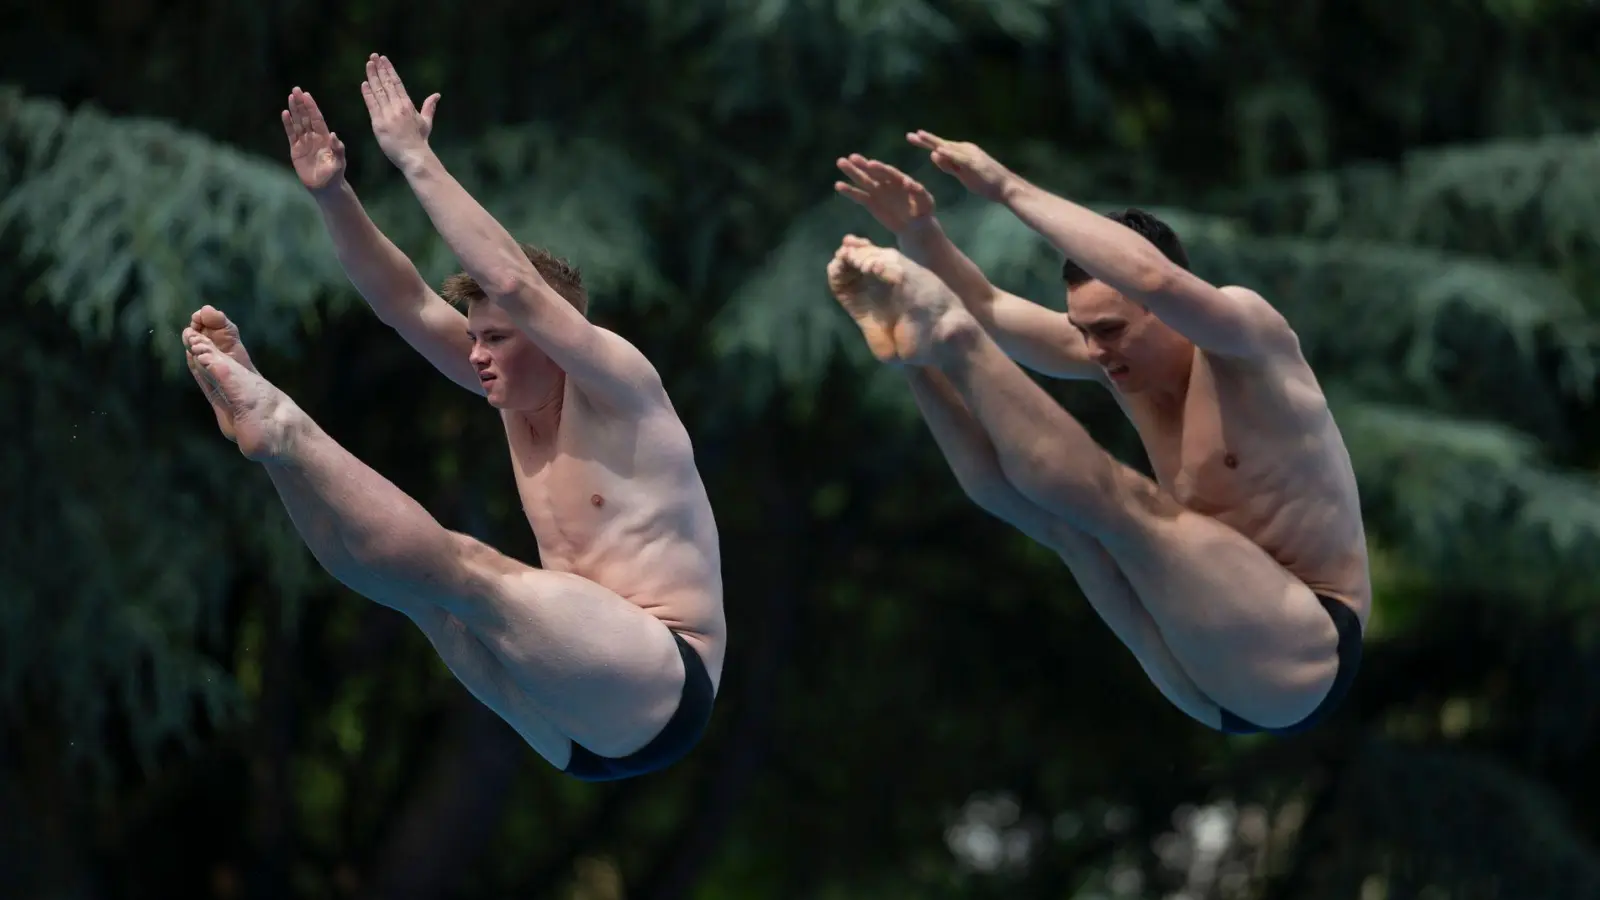 Das erfordert Körperspannung: Die deutschen Synchronspringen Jonathan Schauer (l) und Lou Massenberg (r) zeigen bei der Schwimm-EM in Belgrad ihr Können. (Foto: Marko Drobnjakovic/AP/dpa)